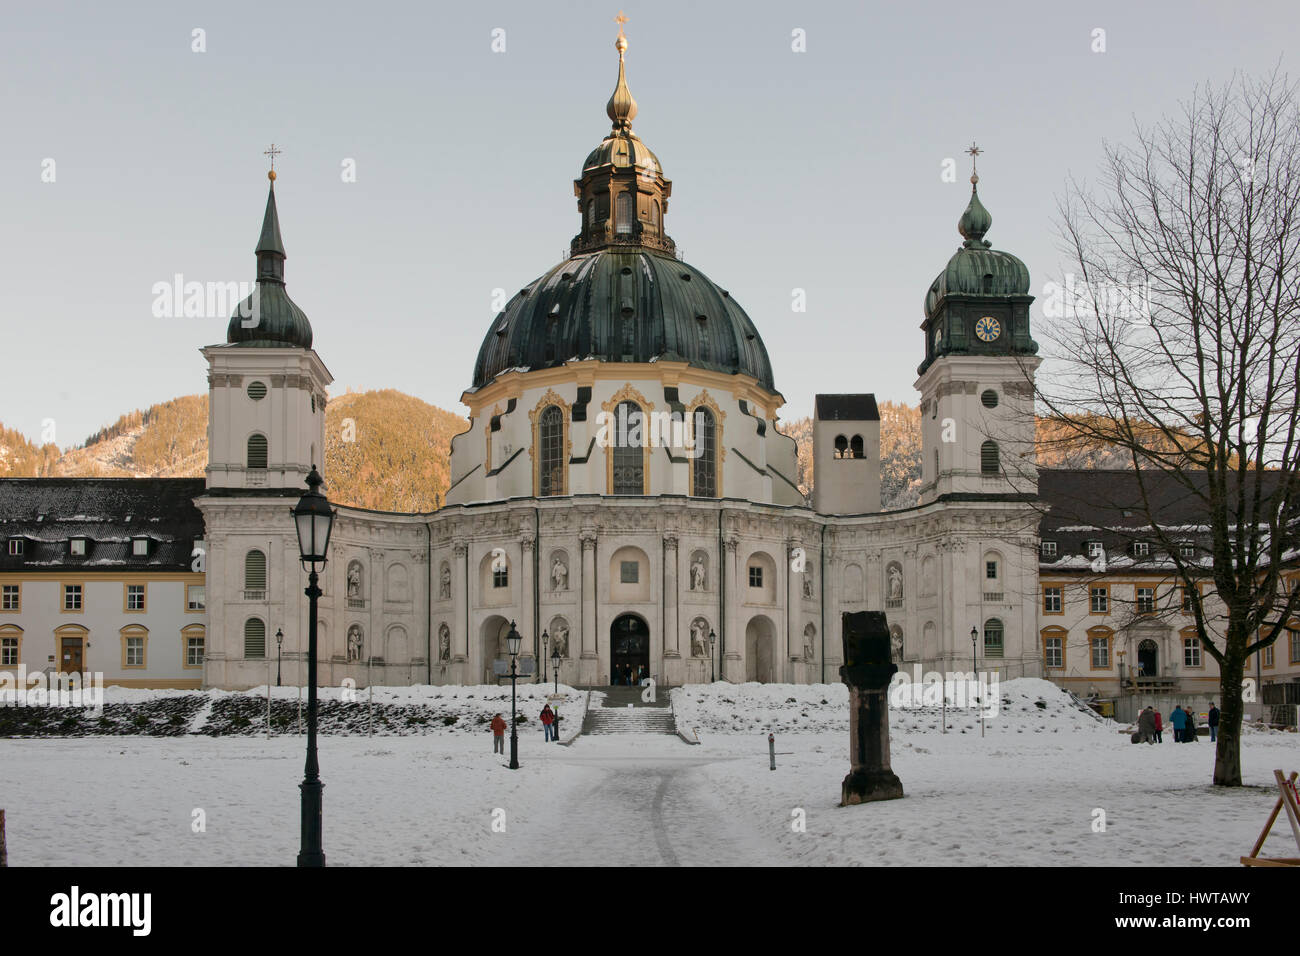 Die Fassade des Ettal Abbey im Winter. Ein Benediktiner-Kloster in Bayern, in der Nähe von Oberammergau, Deutschland Stockfoto